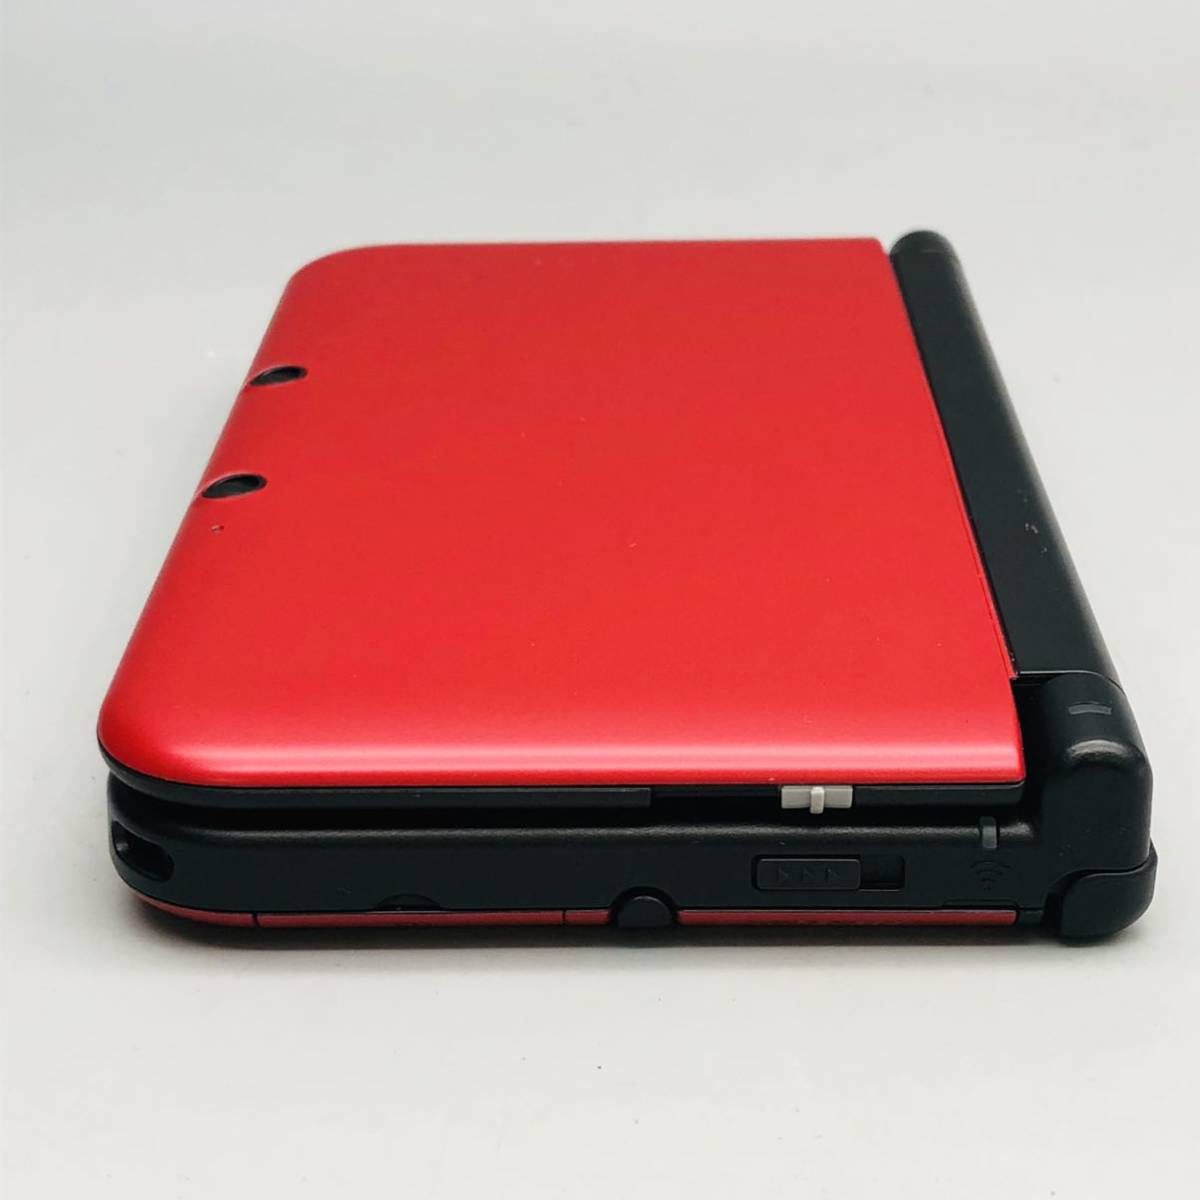 【美品】 Nintendo ニンテンドー 3DS LL SPR-001(JPN) 本体 レッド ブラック 赤 黒 任天堂 人気 ゲーム機 タッチペン付き 動作確認済み_画像5